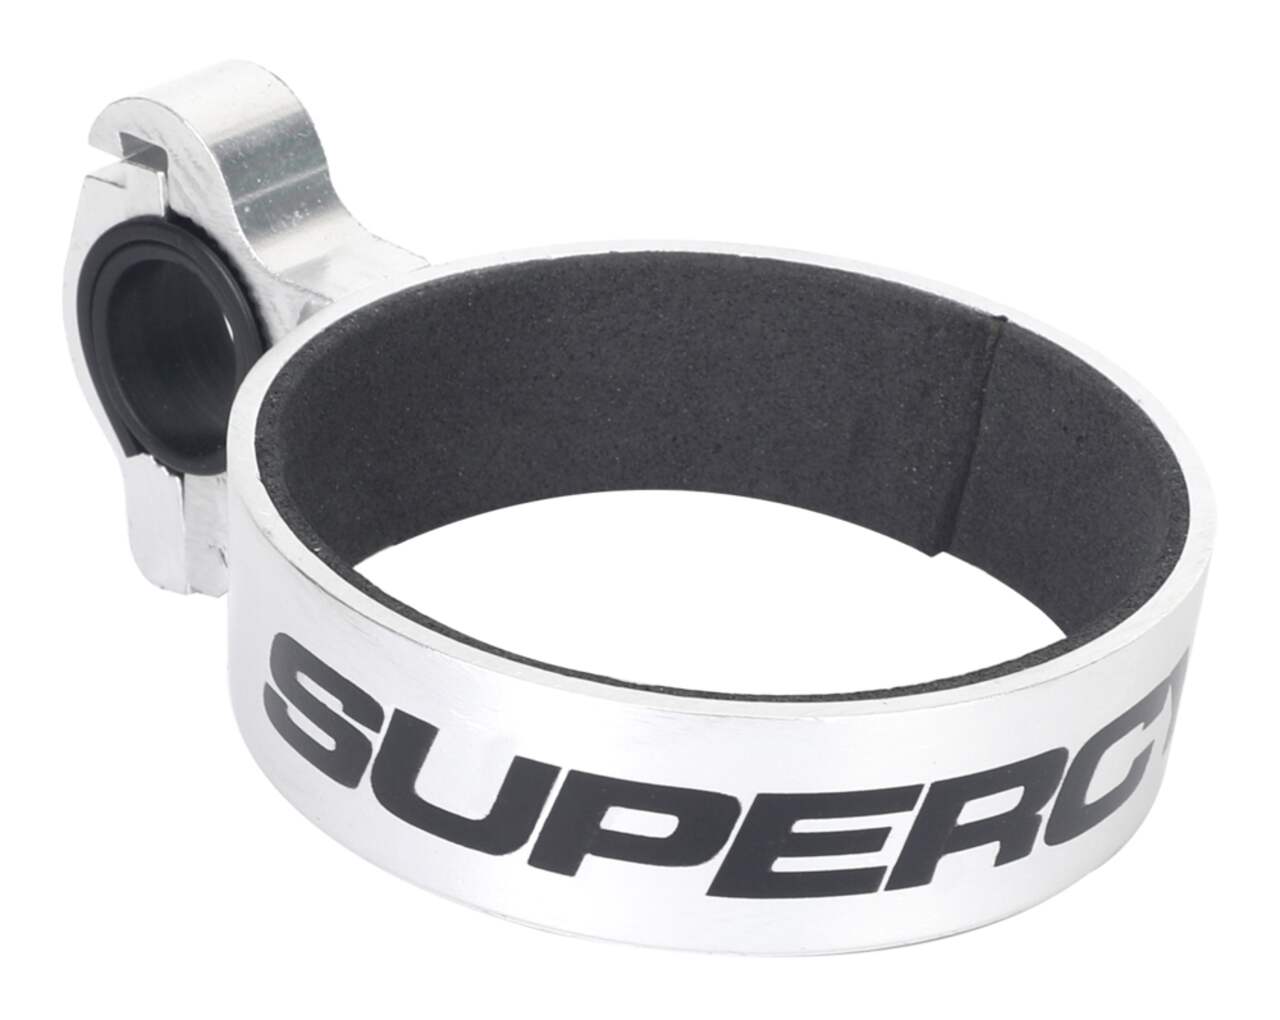 Porte-gobelet/bouteille pour vélo Supercycle Traveler en aluminium avec  anneau en caoutchouc, argenté